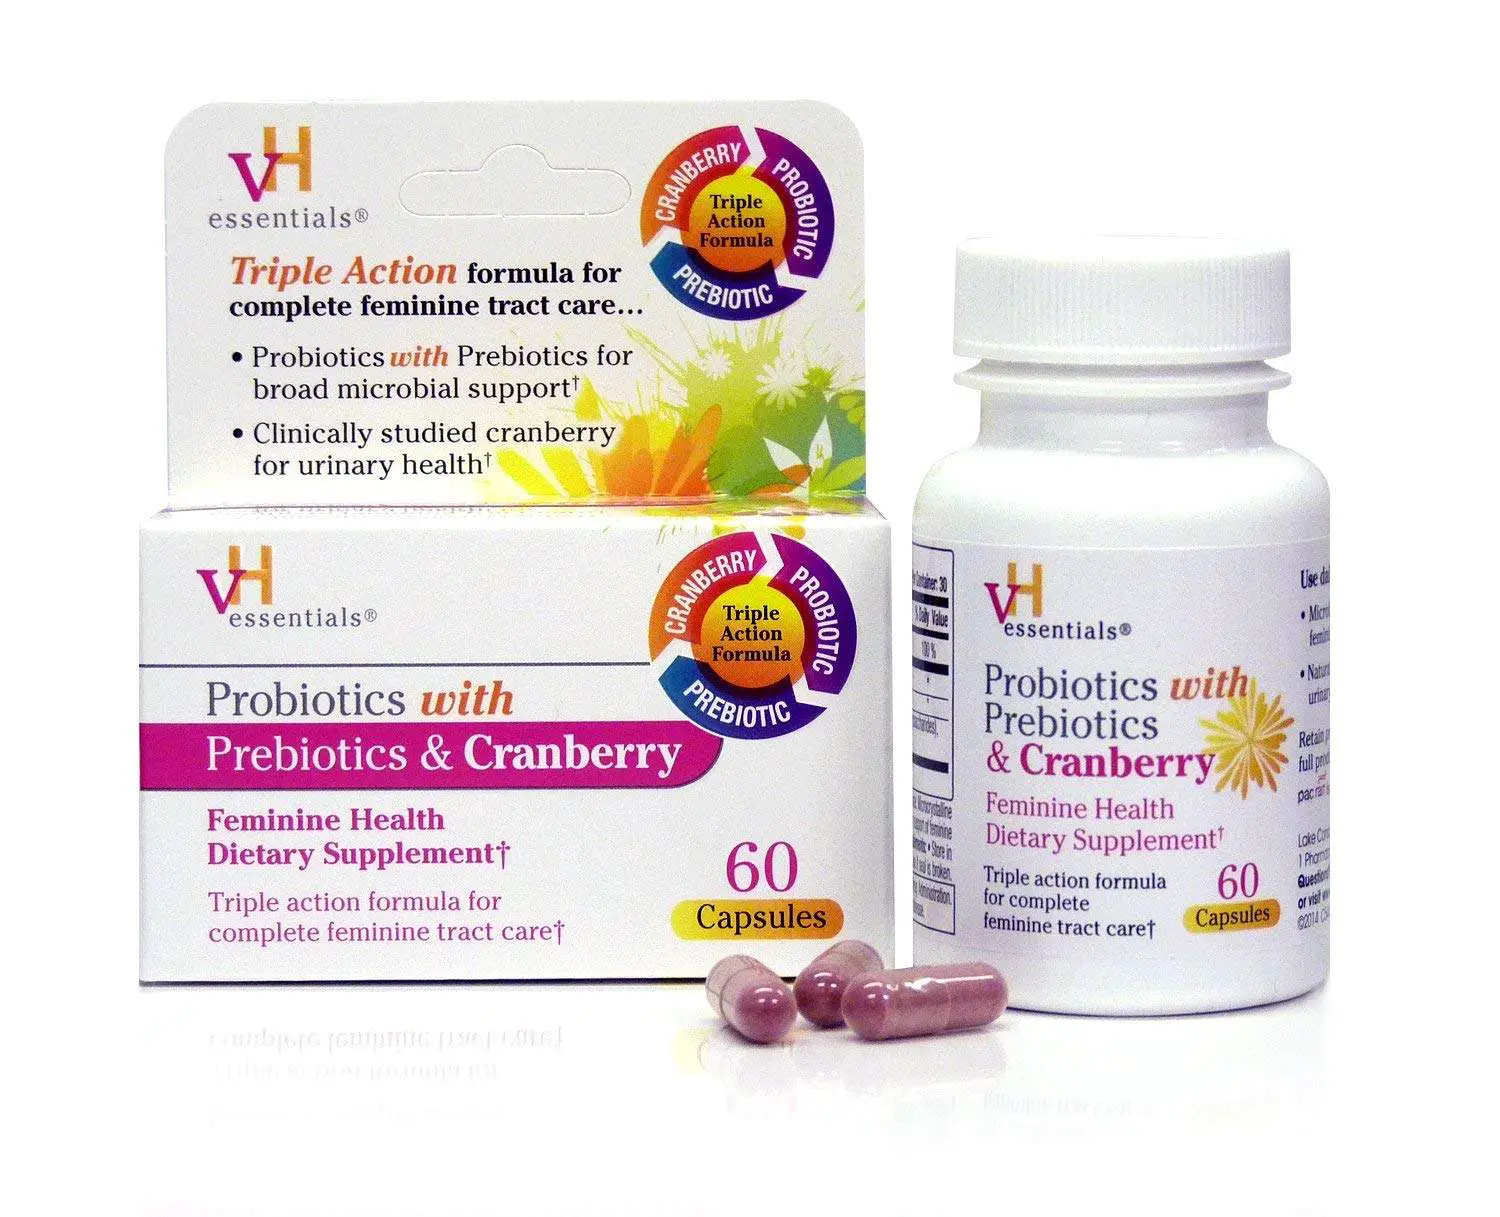 Vh Probiotics For Women Full Review  Does It Work?  Feminine Health ...